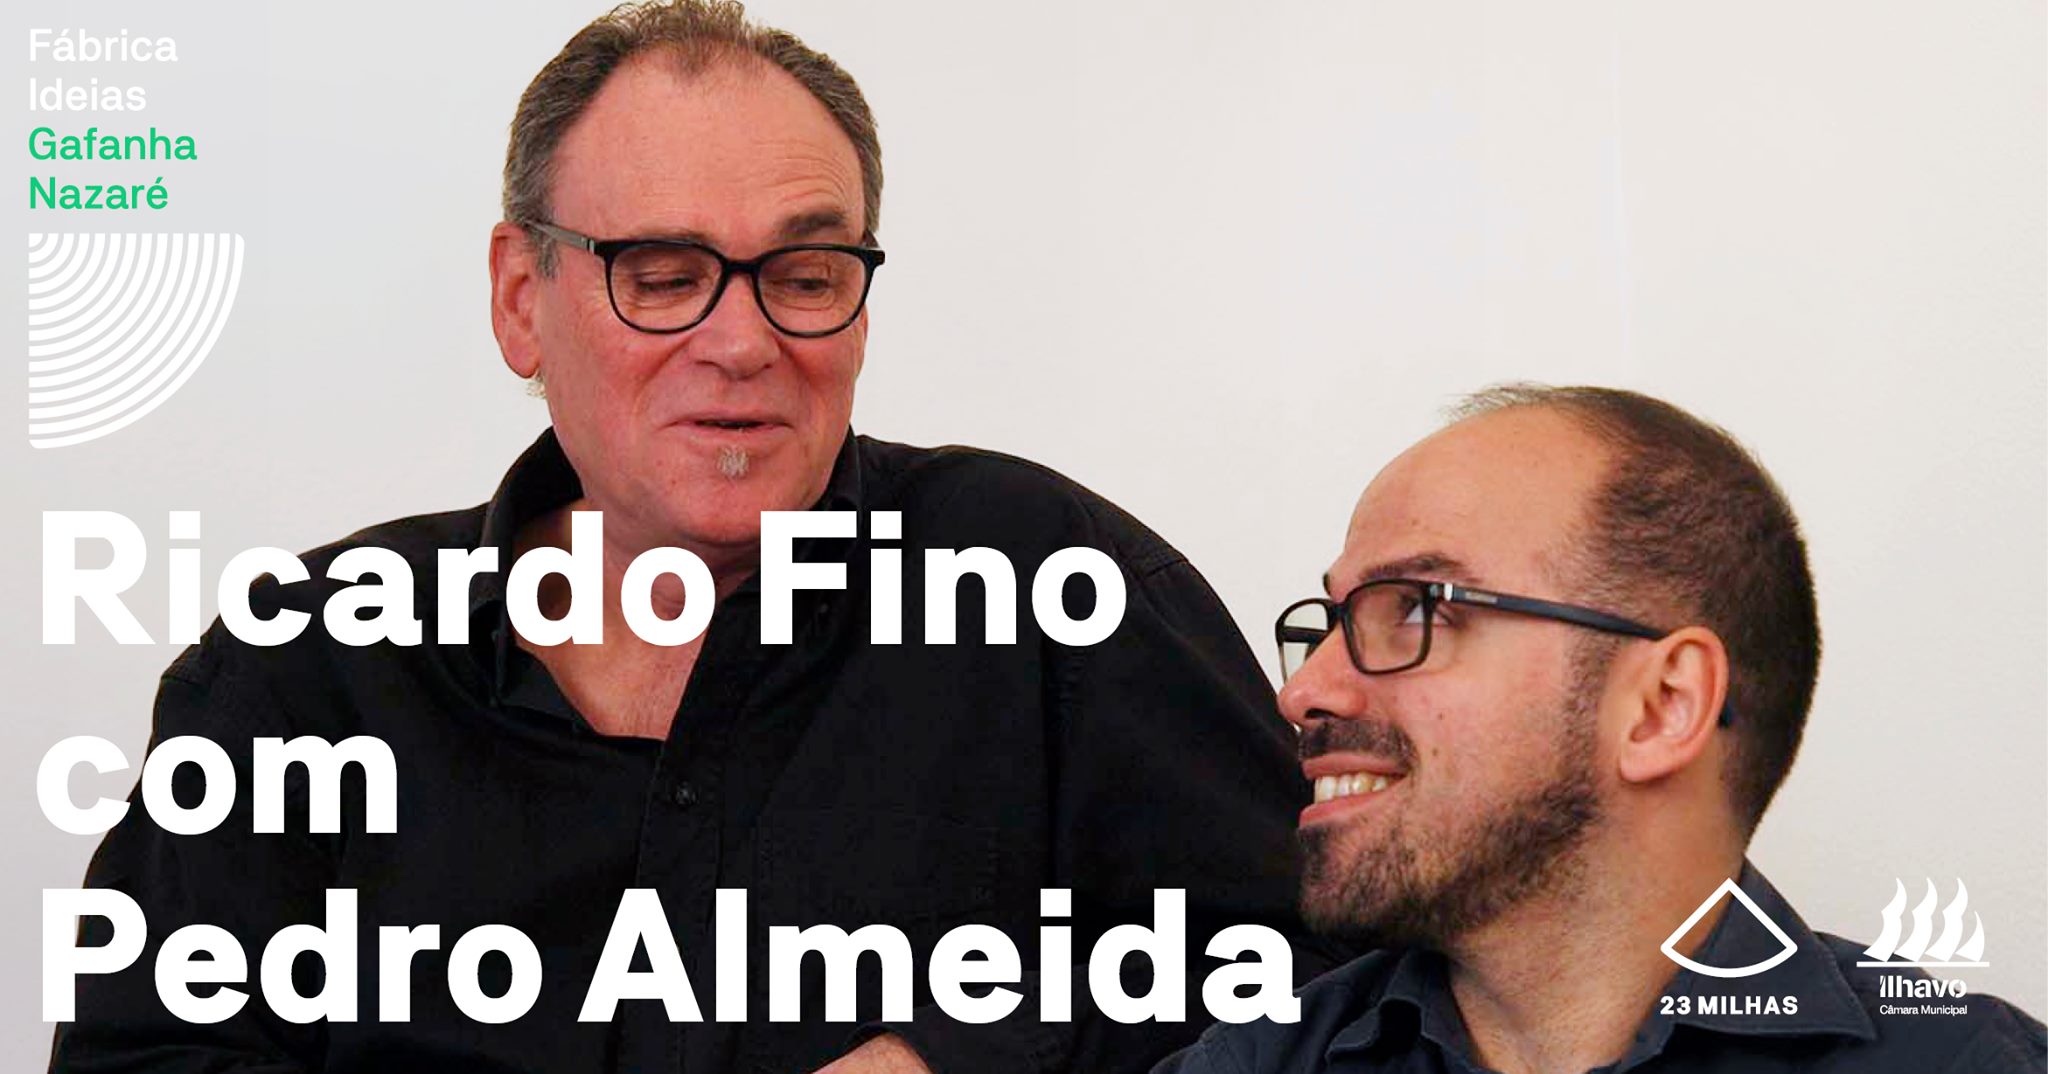 Ricardo Fino com Pedro Almeida e convidados apresentam 'Canções Tardias'